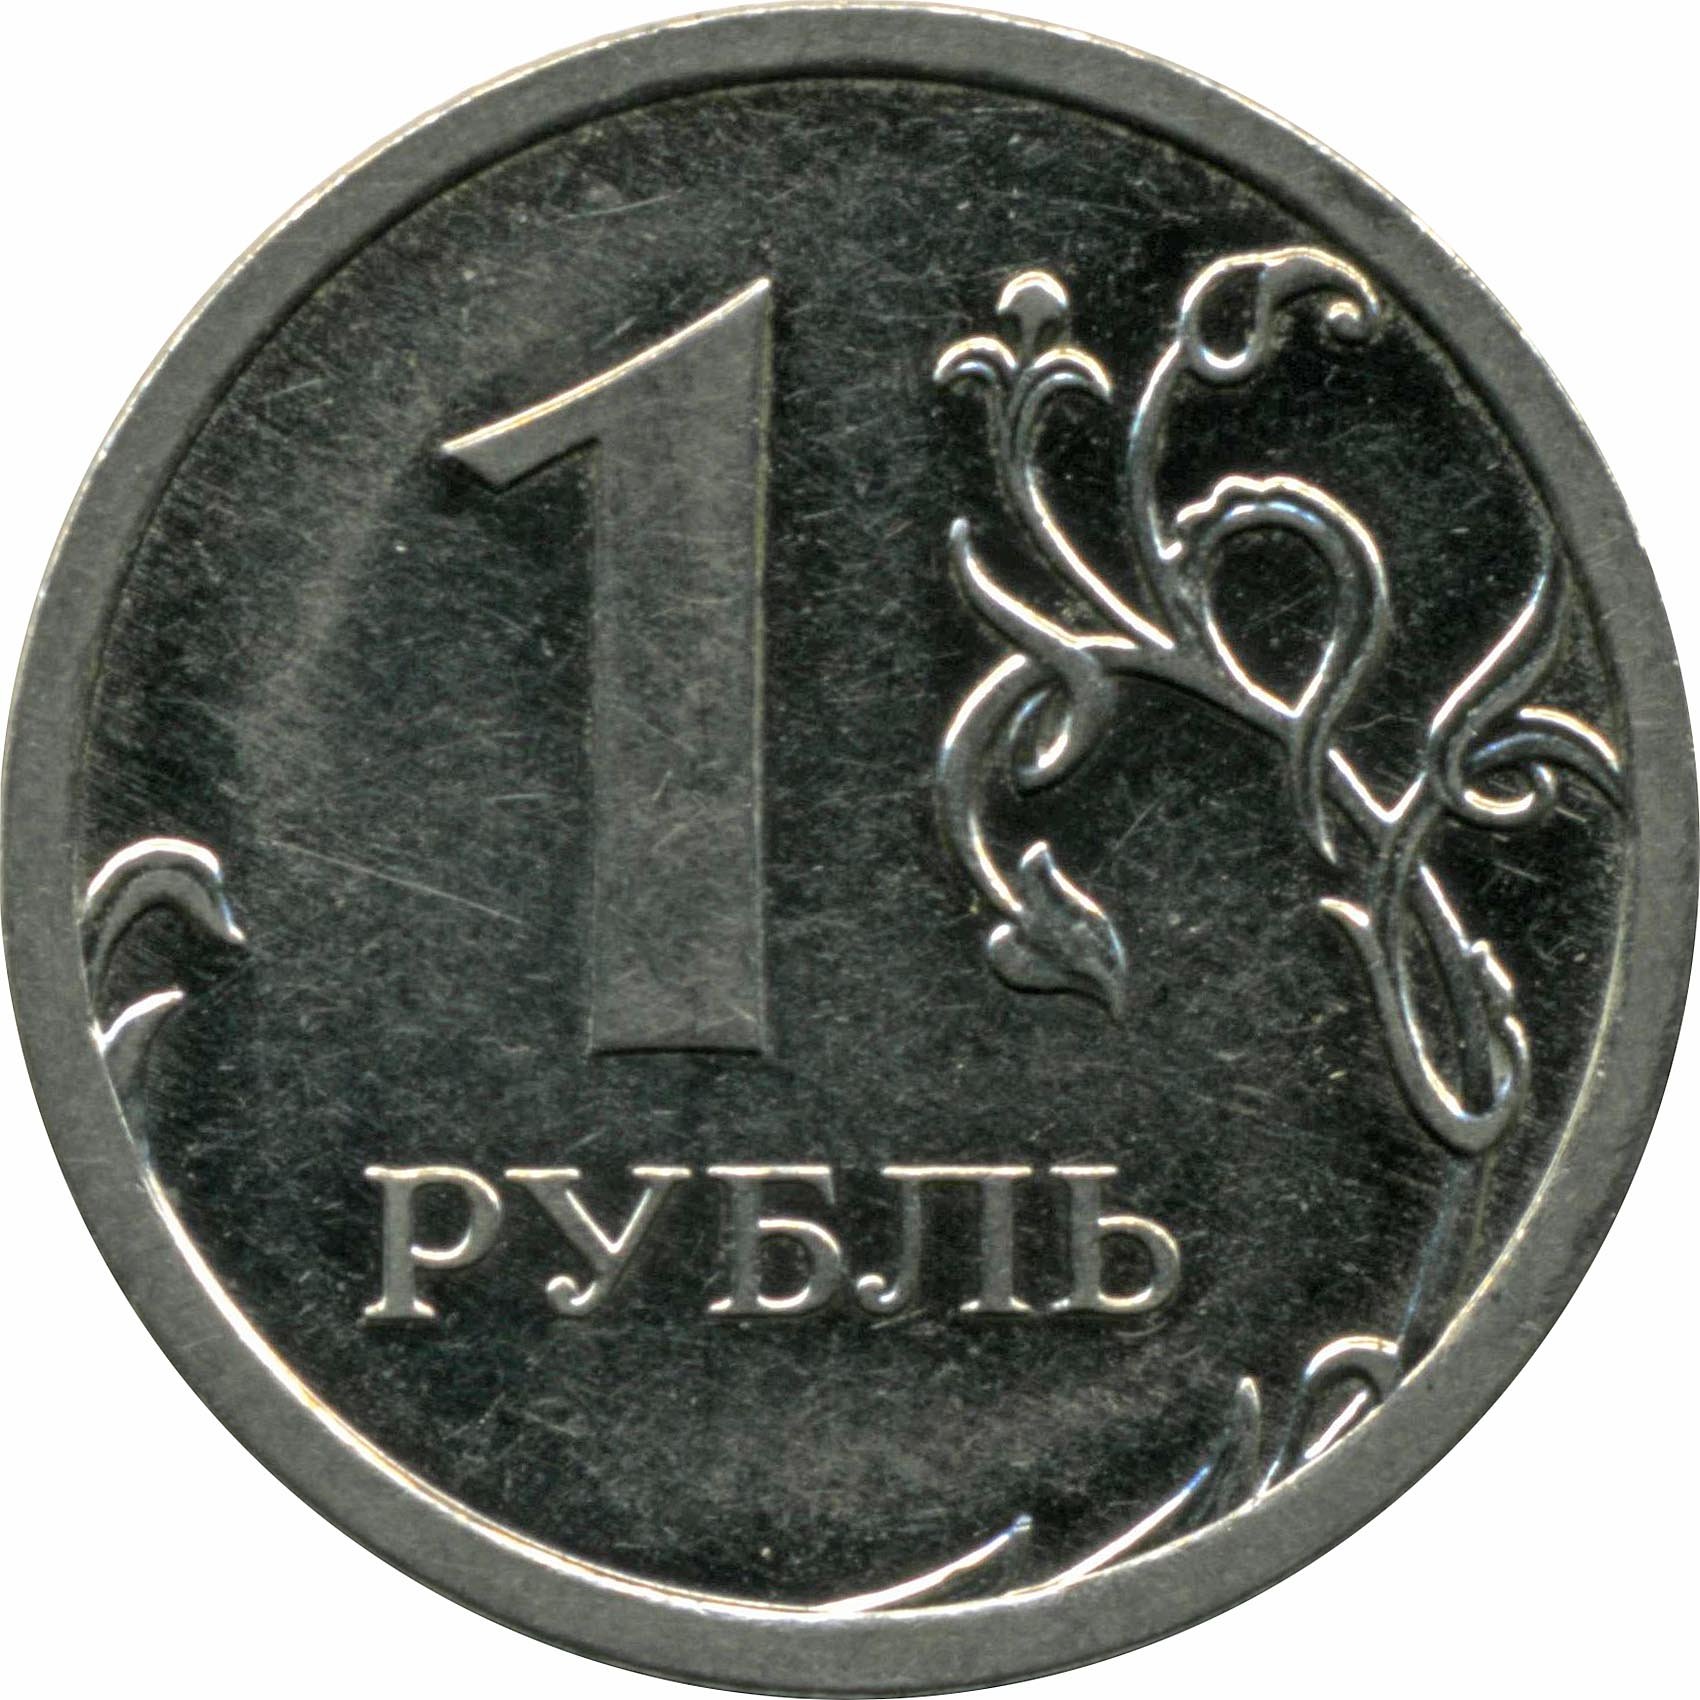 Живем на 1 рубль. 1 Рубль. Монета 1 рубль. Монета 1 рубль на прозрачном фоне. Монеты России 1 рубль.